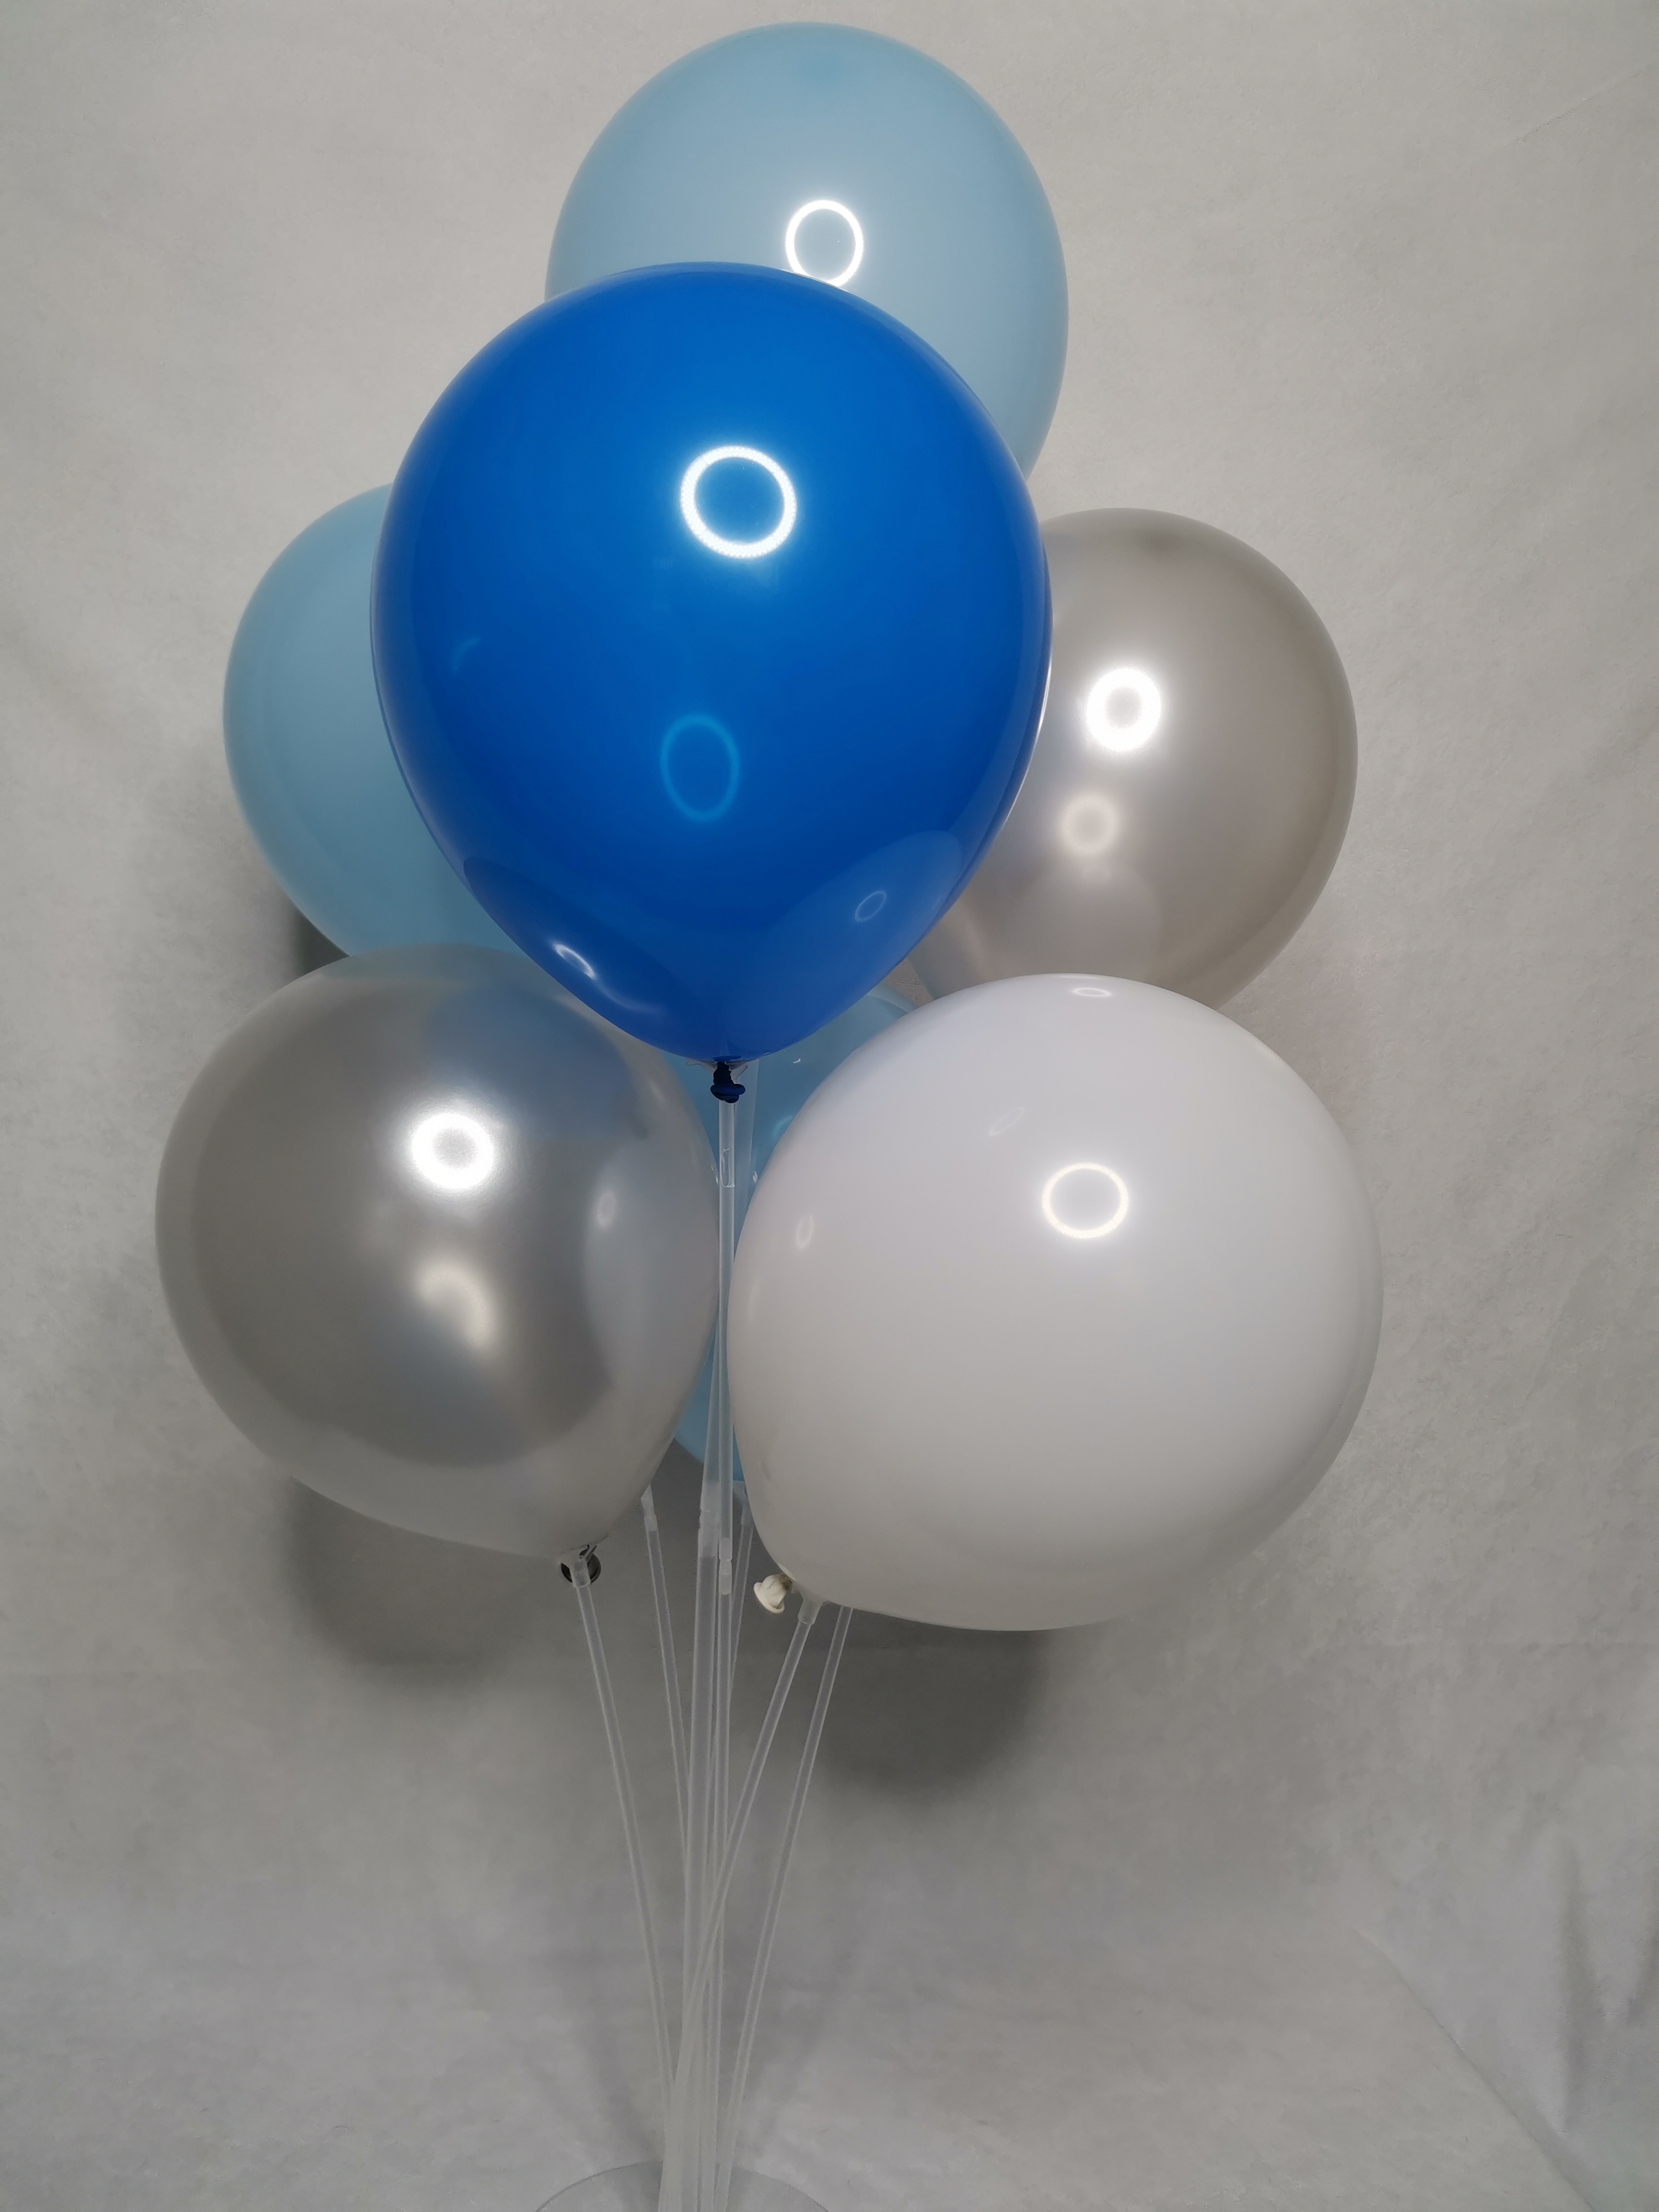 Набор воздушных шаров 119WGrBB из 4 цветов белый, серый, голубой, синий, 50шт набор воздушных шаров для оформления фотозоны